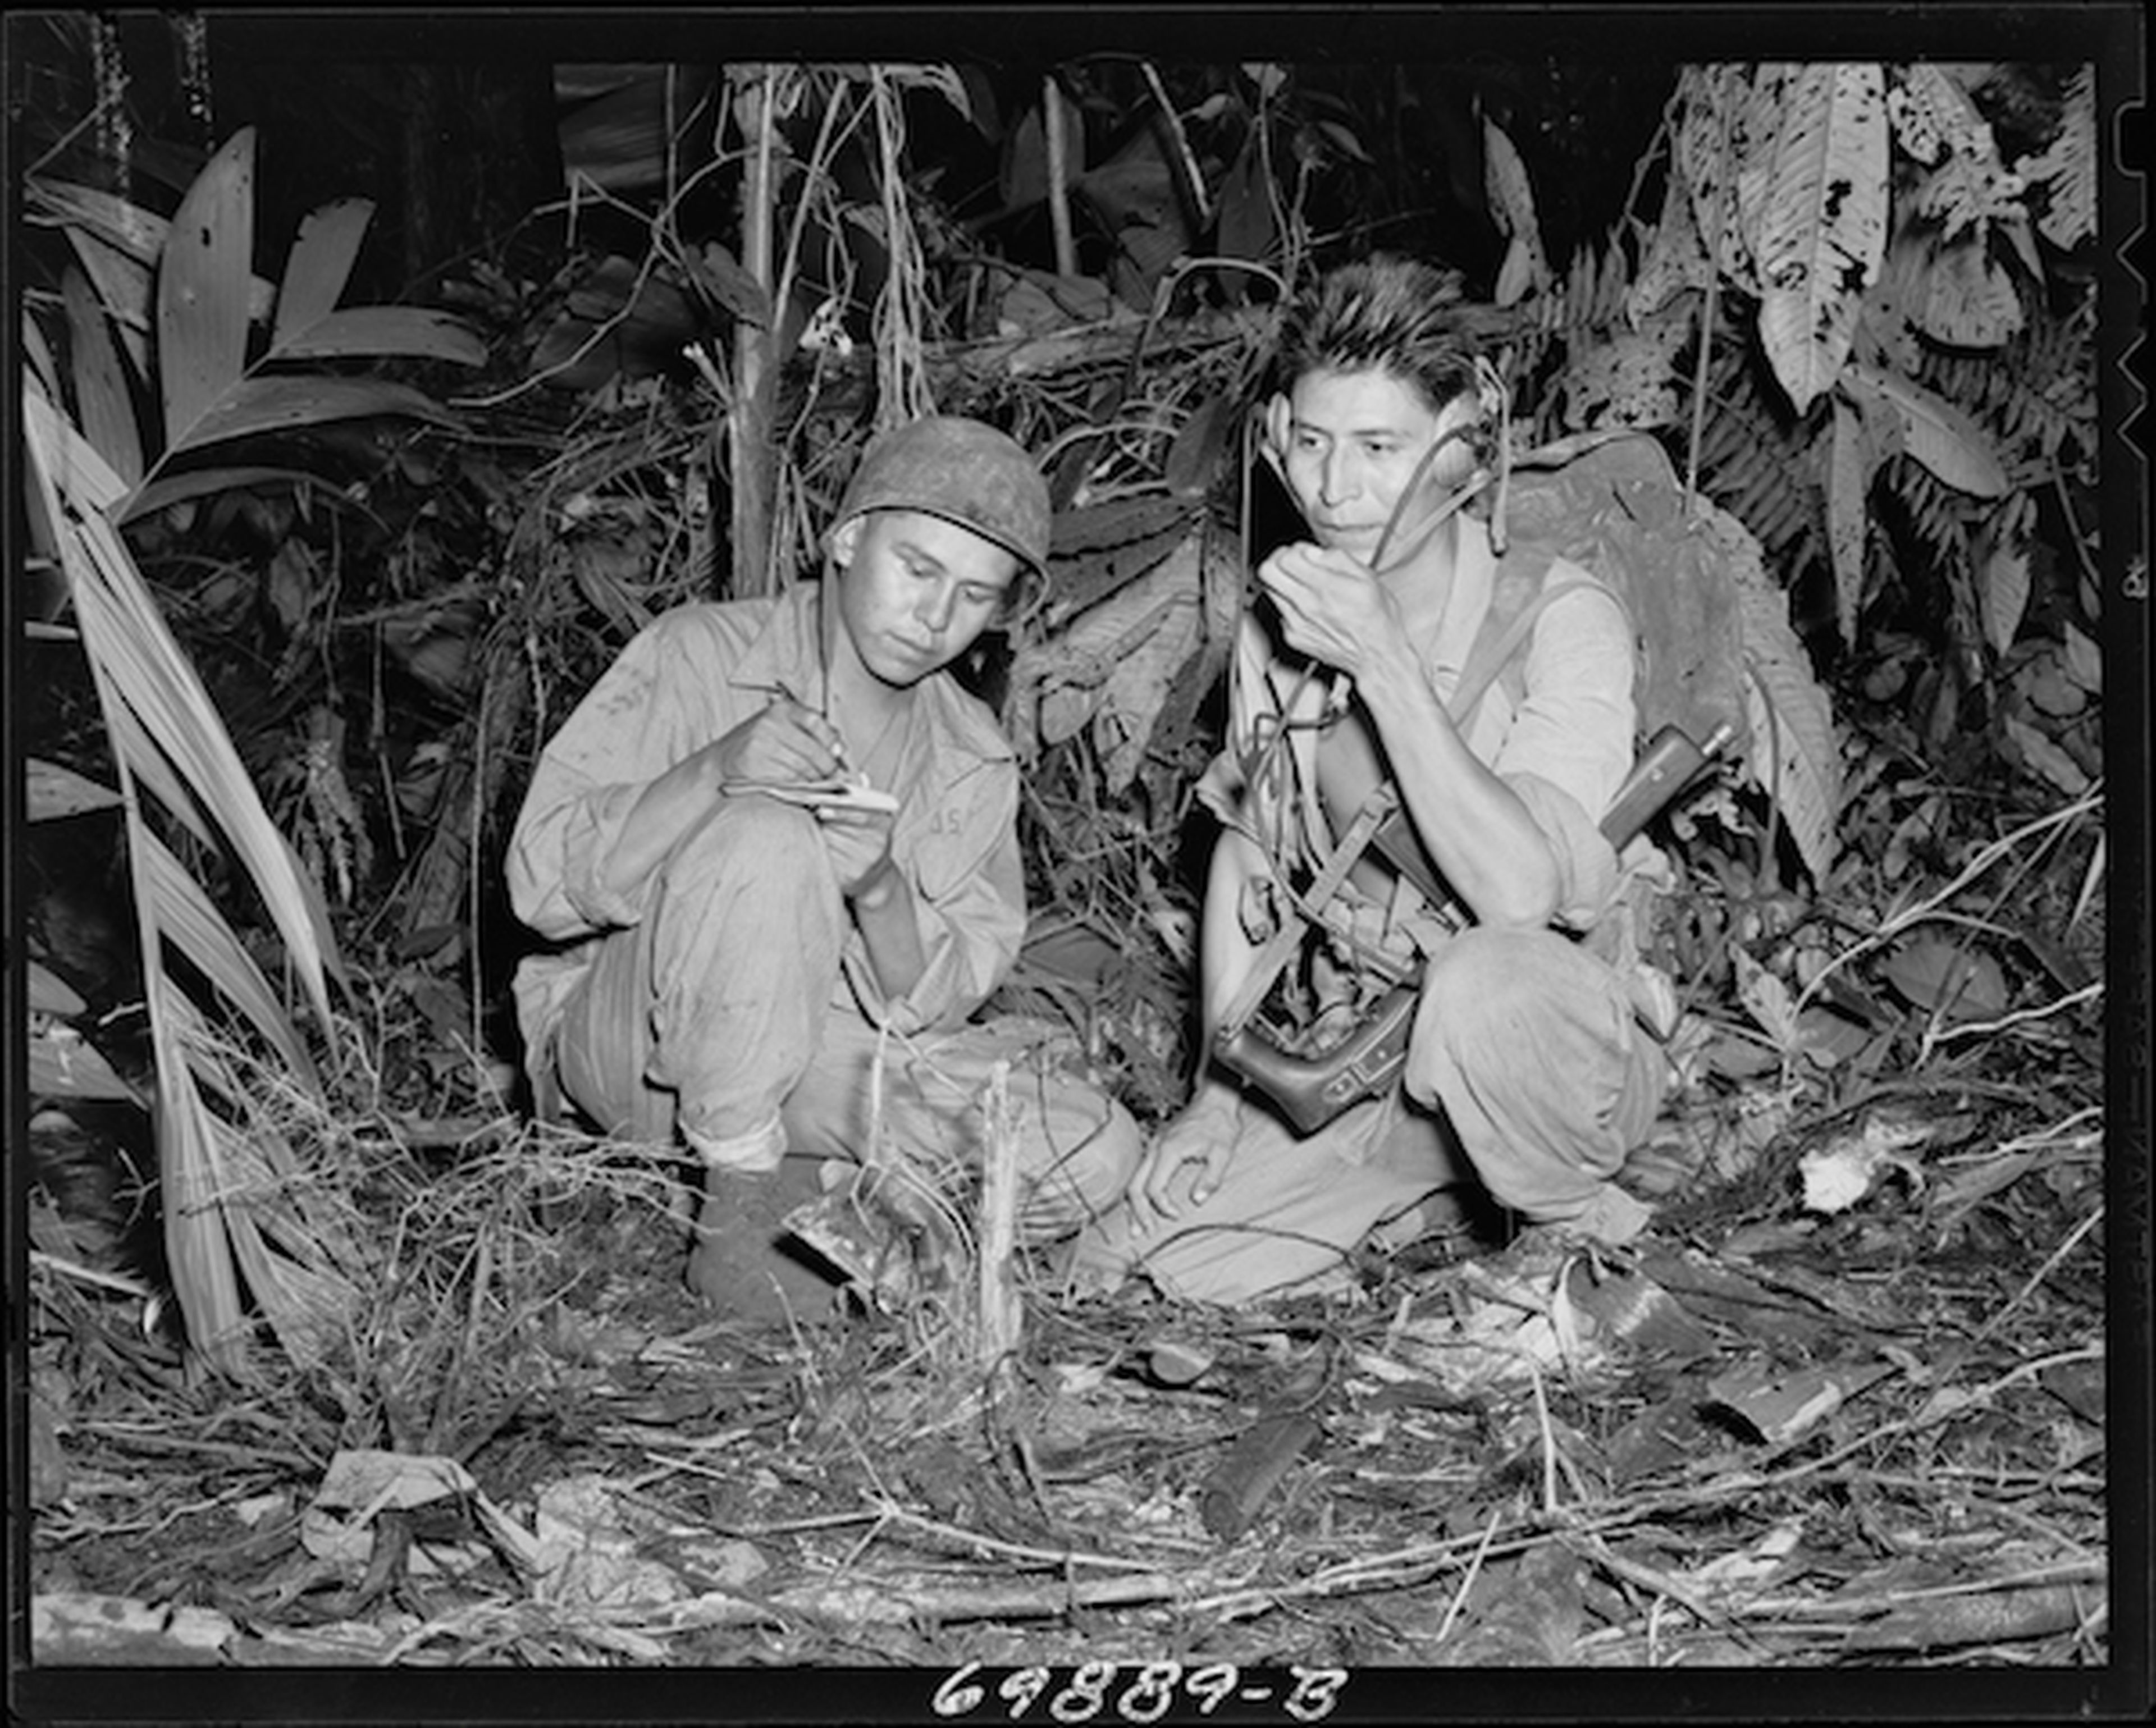 Los locutores de claves navajo Henry Bake y George Kirk en 1943.